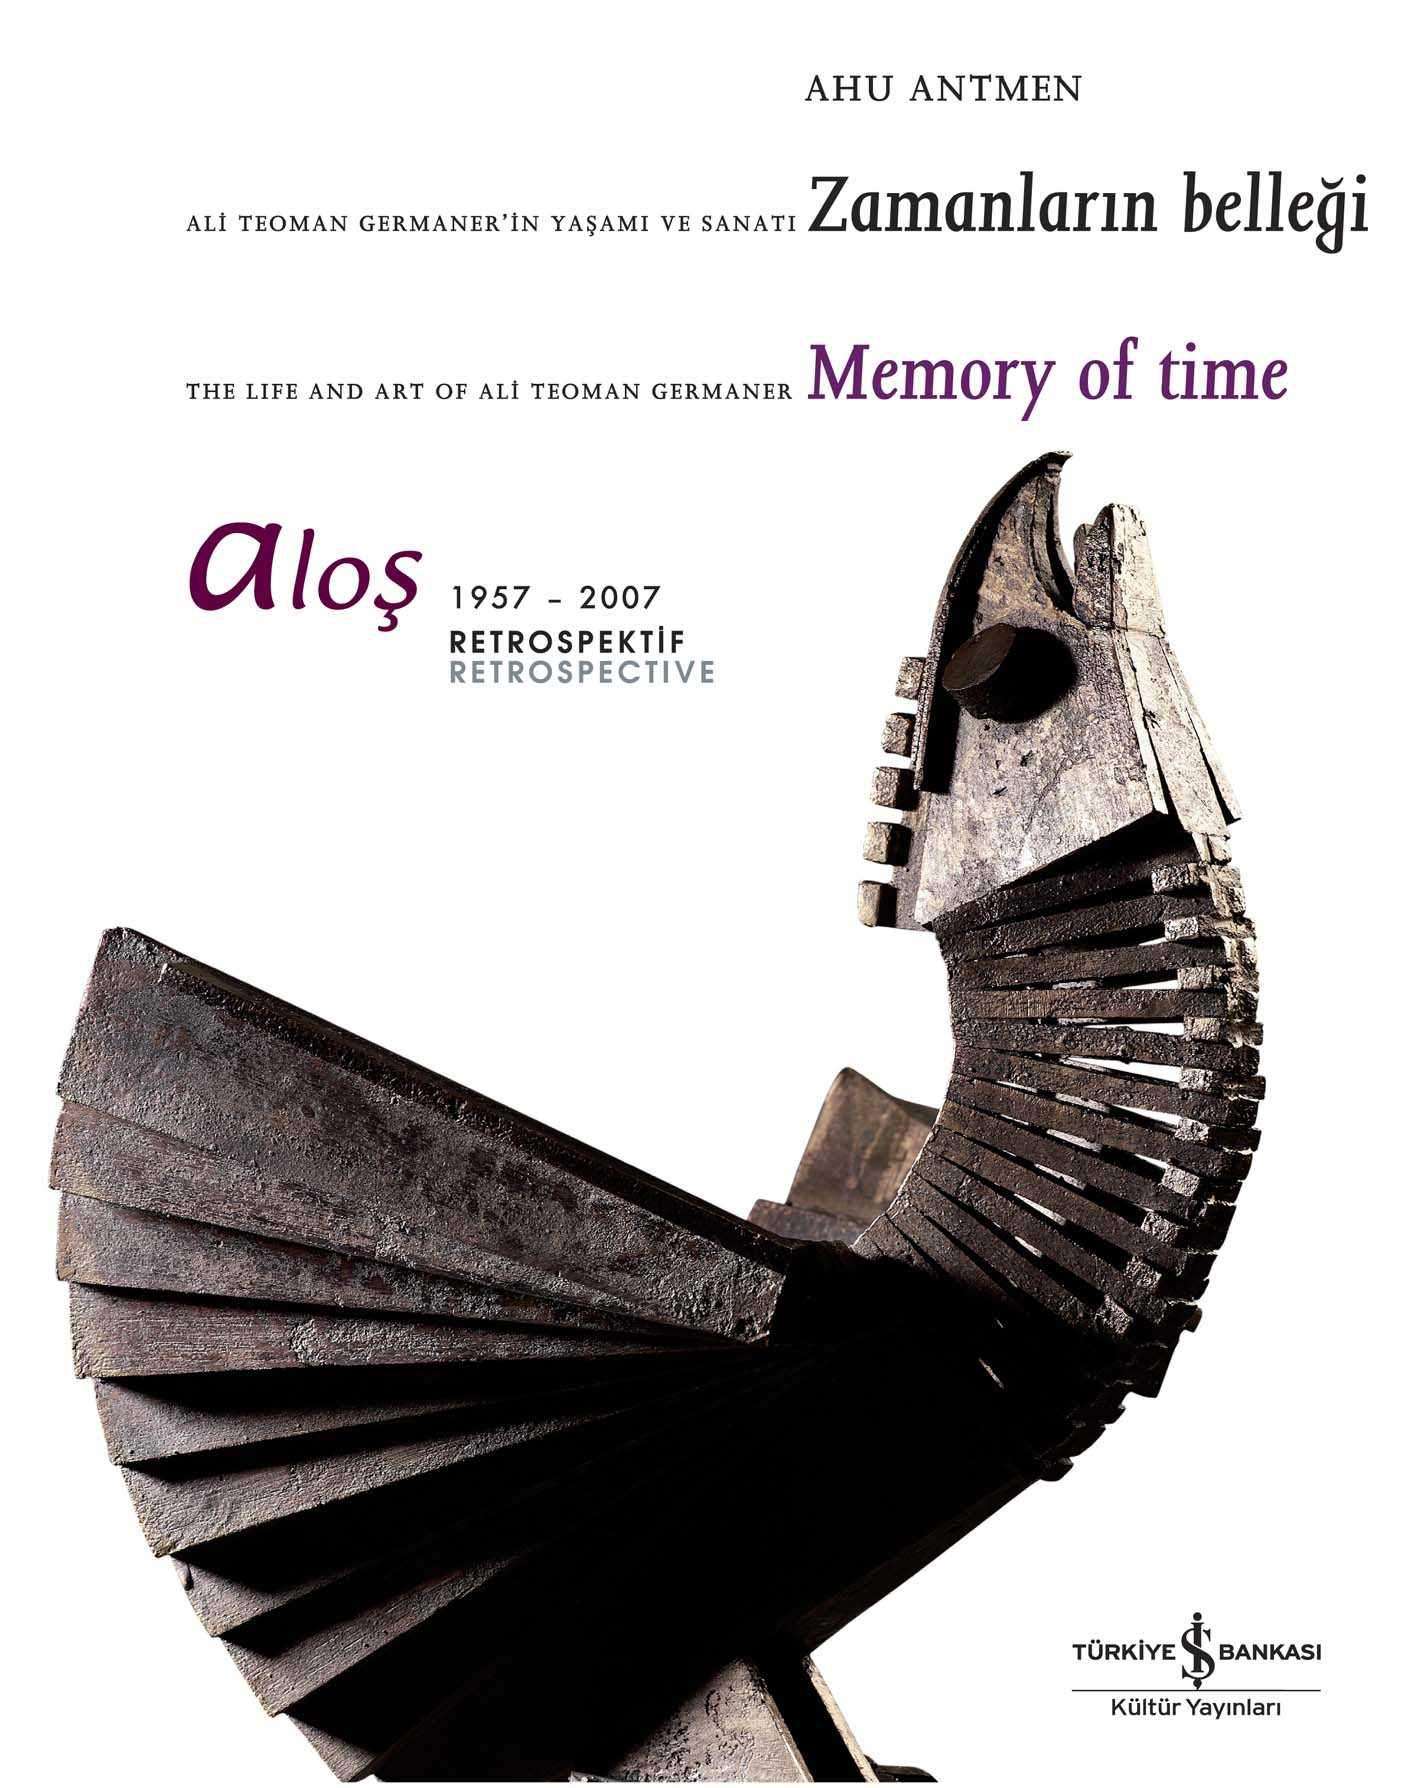 Aloş – Ali Teoman Germaner’in Yaşamı ve Sanatı Zamanların Belleği / The Life and Art of Ali Teoman Germaner Memory of Time 1957-2007 Retrospektif Retrospective